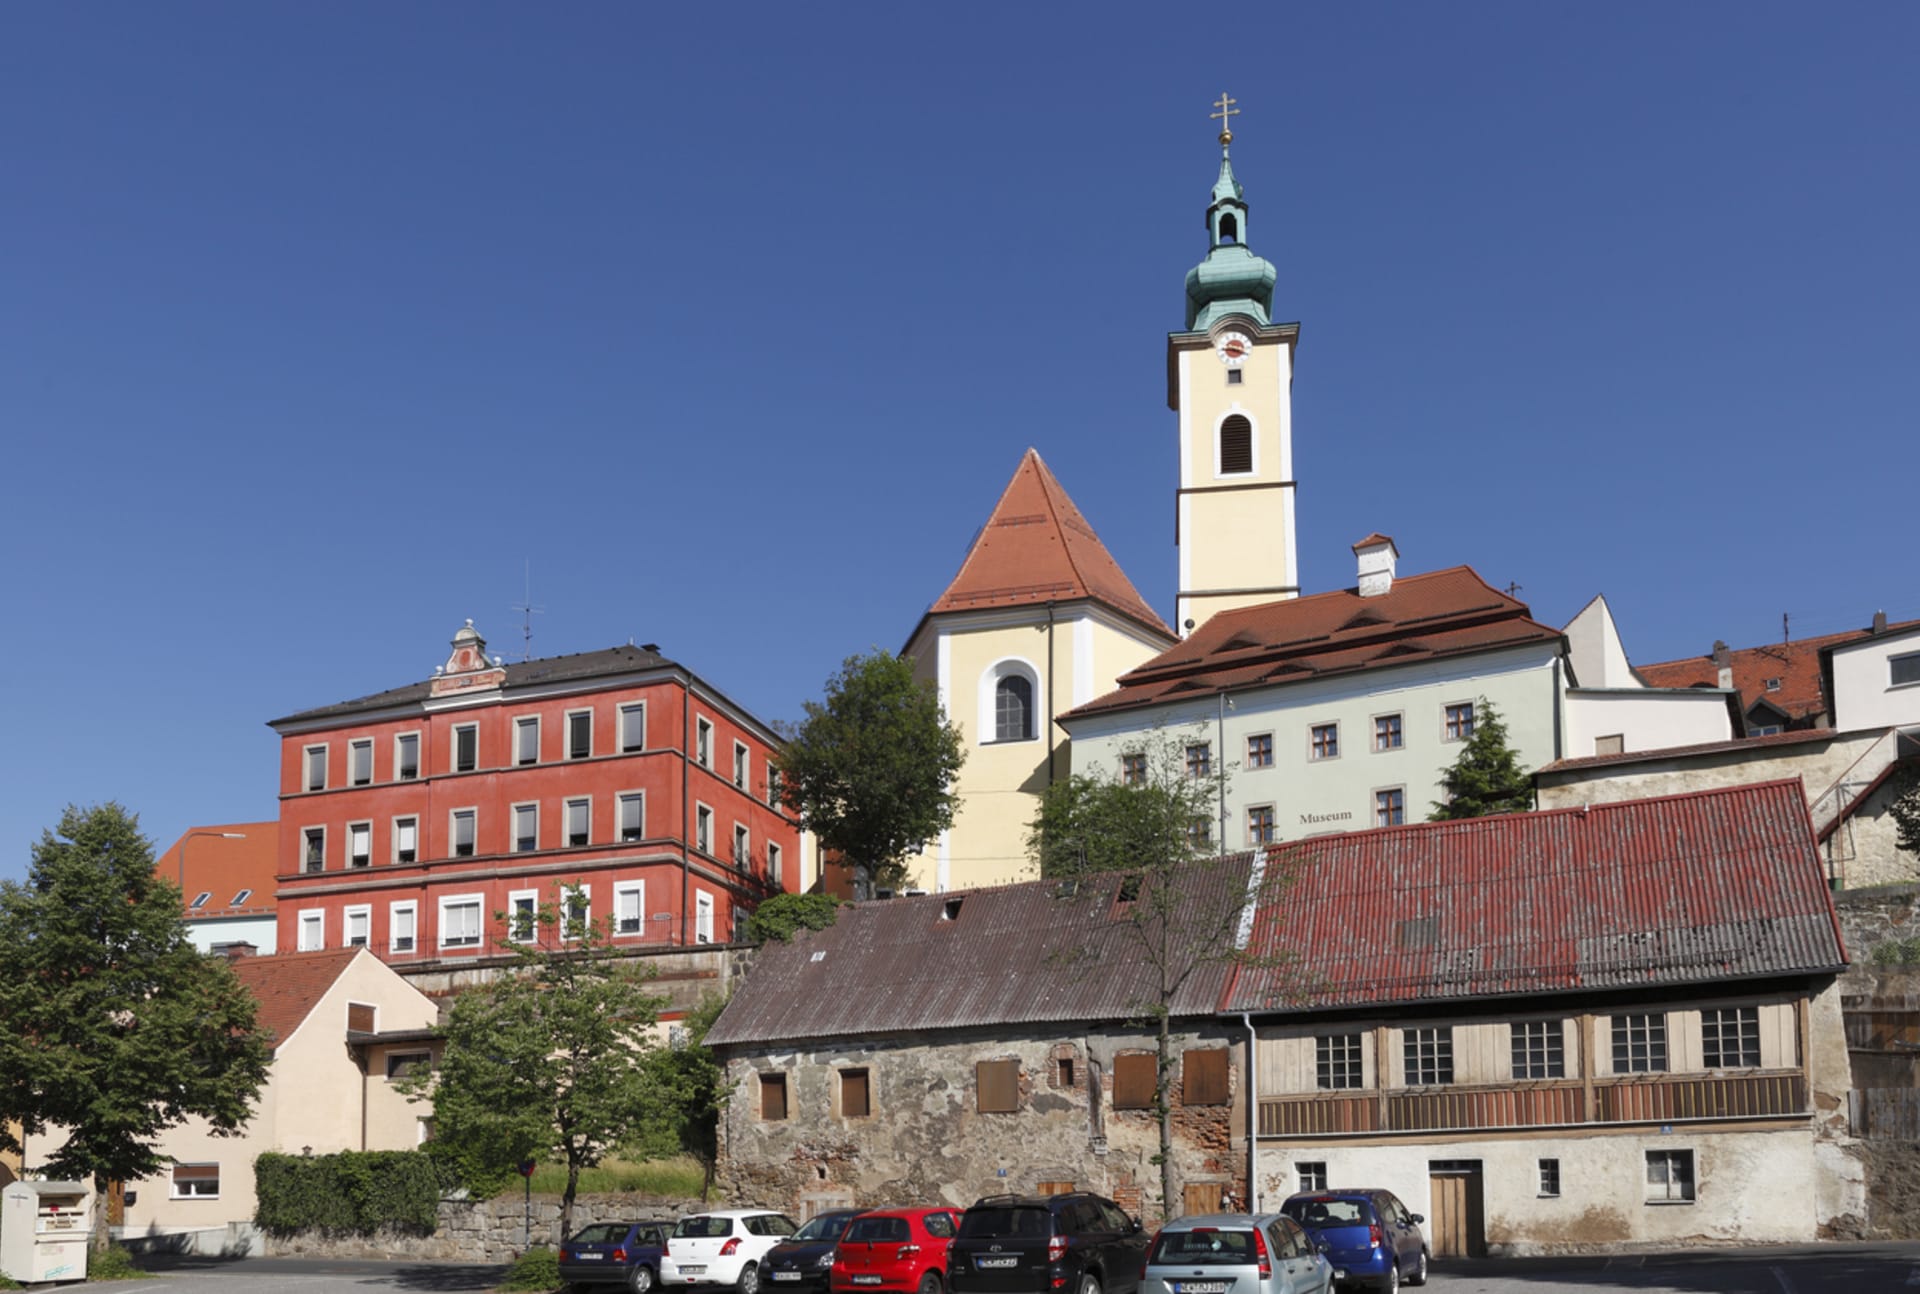 Malebným bavorským městečkem Neustadt an der Waldnaab otřásla krutá smrt řezníka